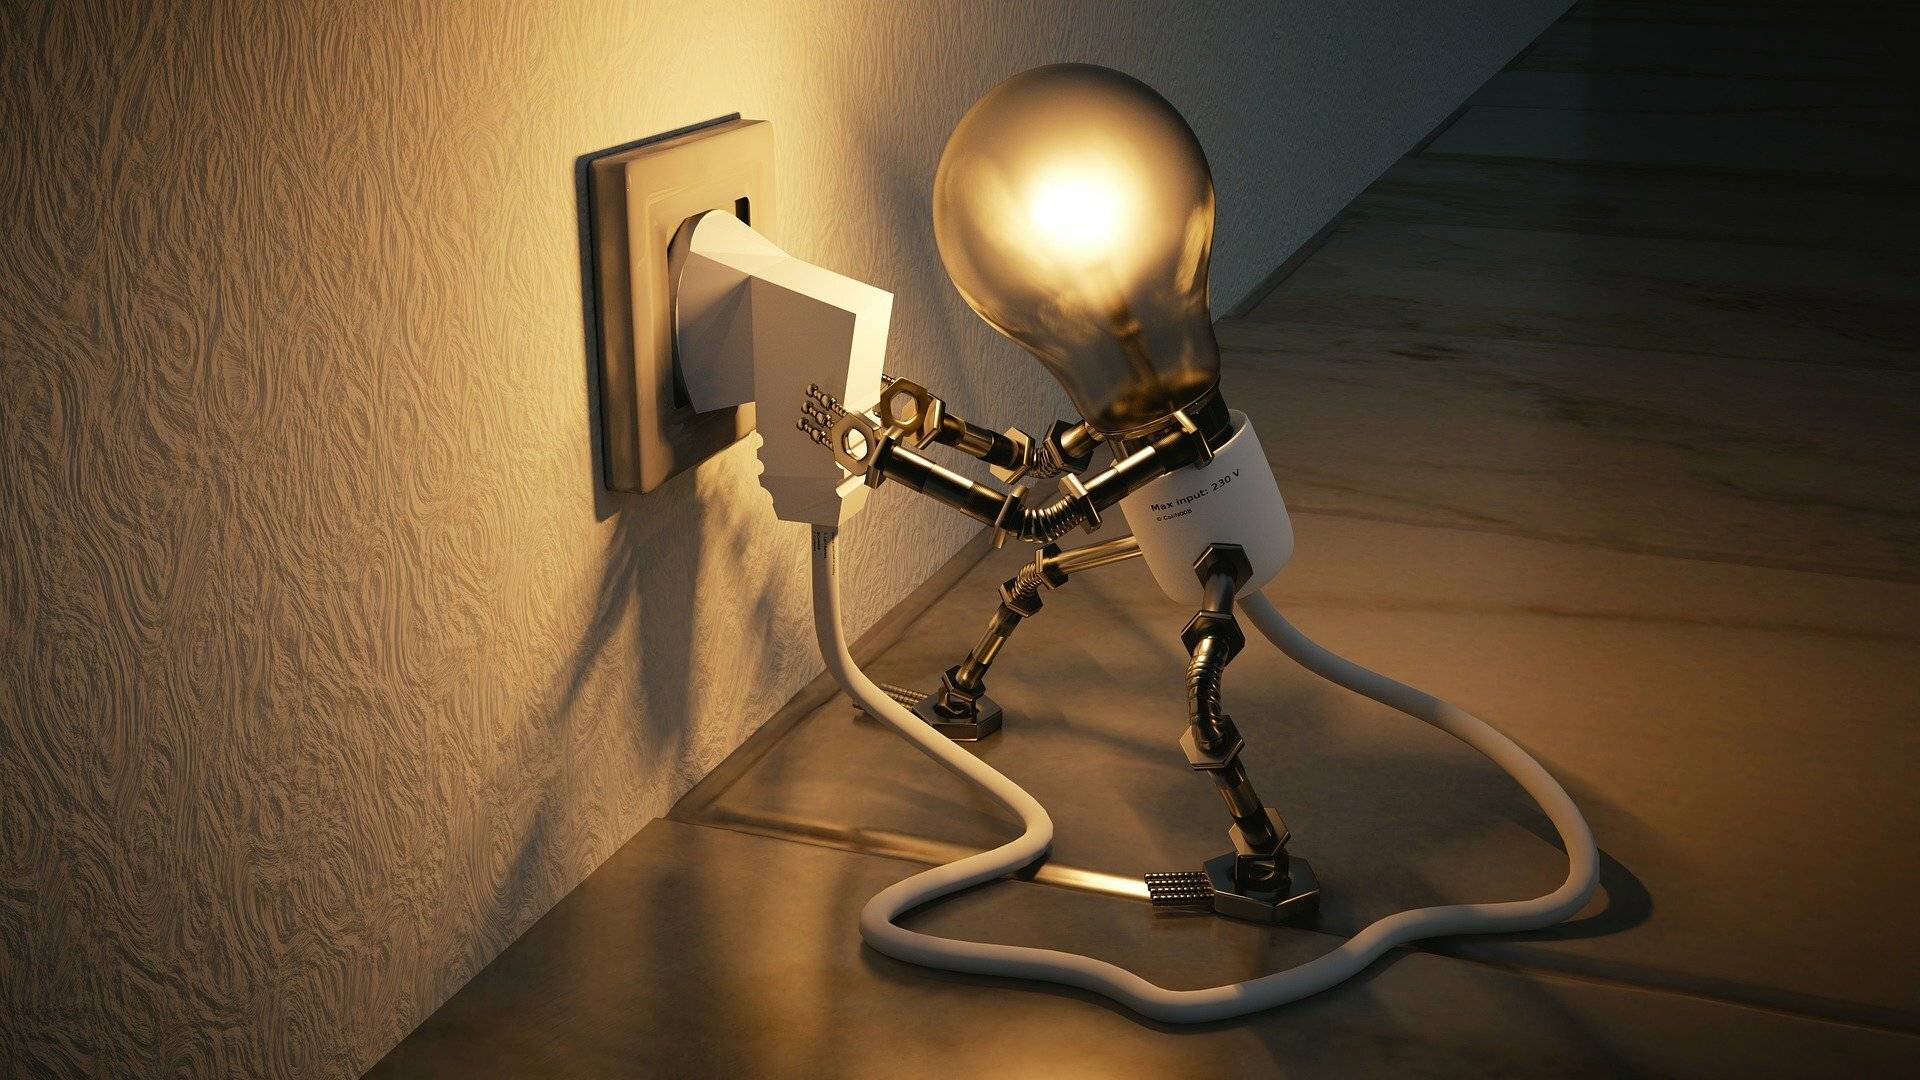  Energie sparen ist das Gebot der Stunde.  
 Foto: Colin Behrens/Pixabay 